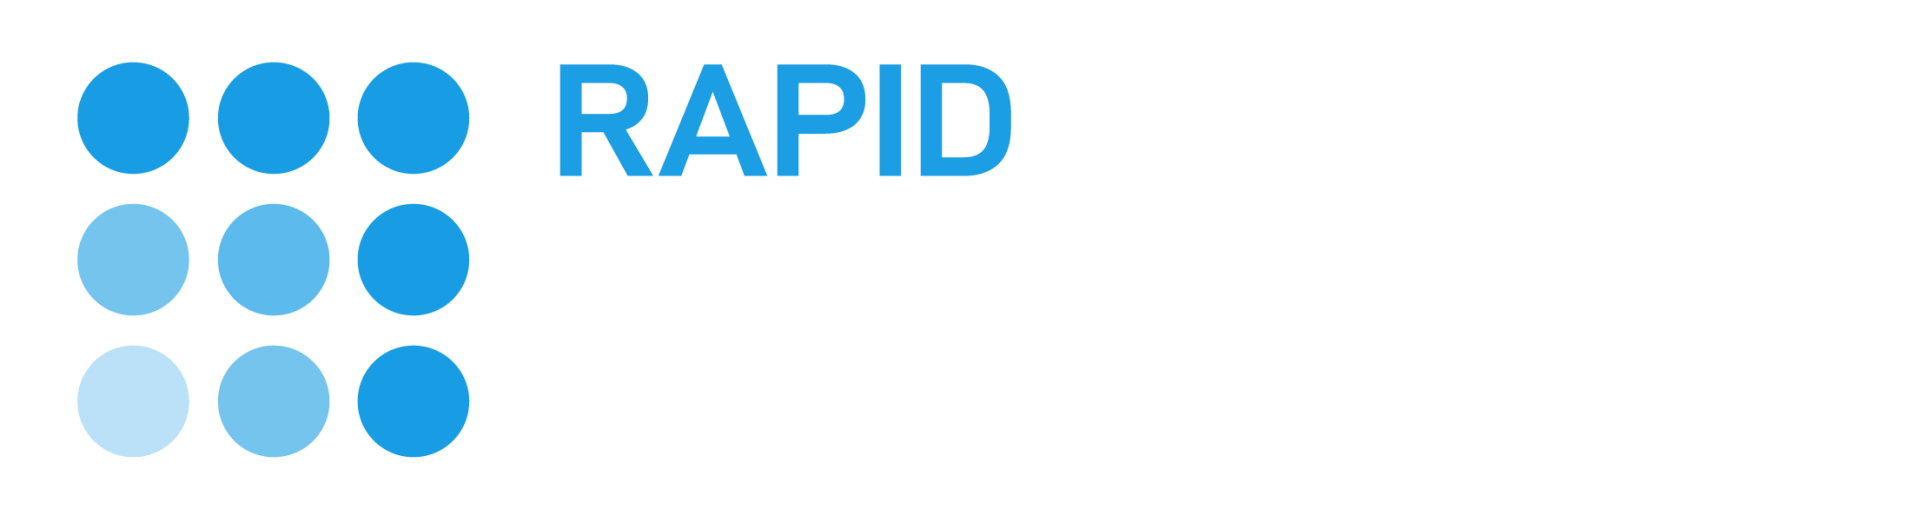 Rapid Crush Insider By Jason Fladlien & Will Mattos - Free Download Course